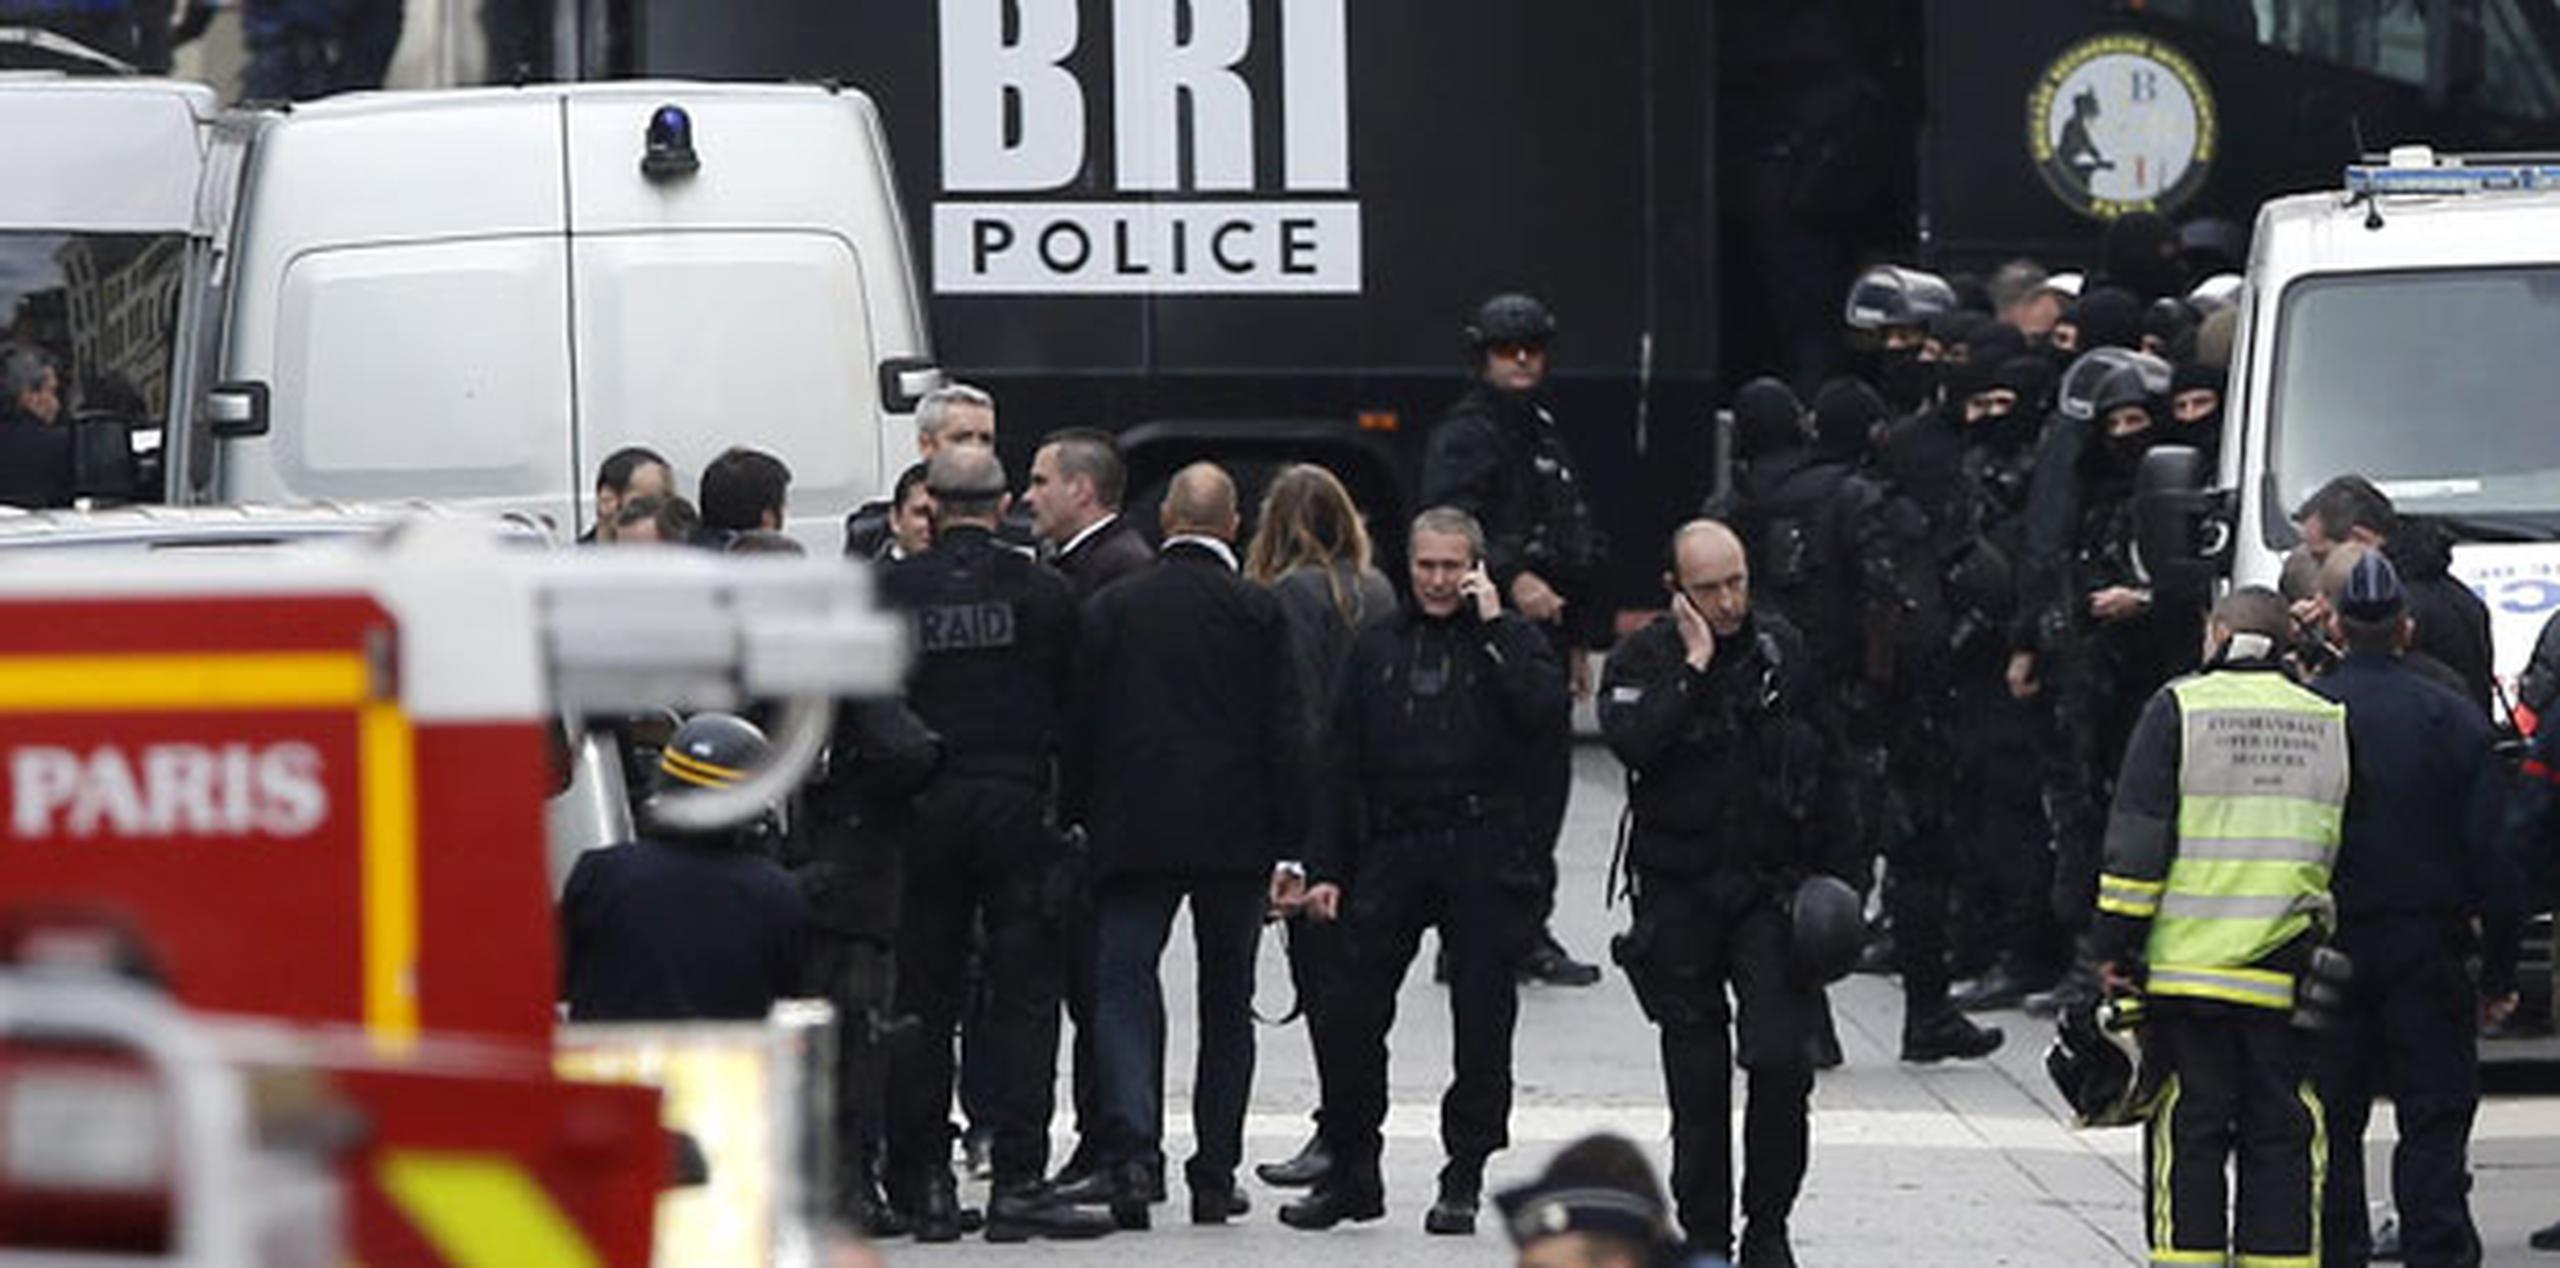 El fiscal de París, François Molins, explicó que el asalto policial se produjo en el marco de la investigación por los atentados del pasado viernes en París. (EFE/Etienne Laurent)